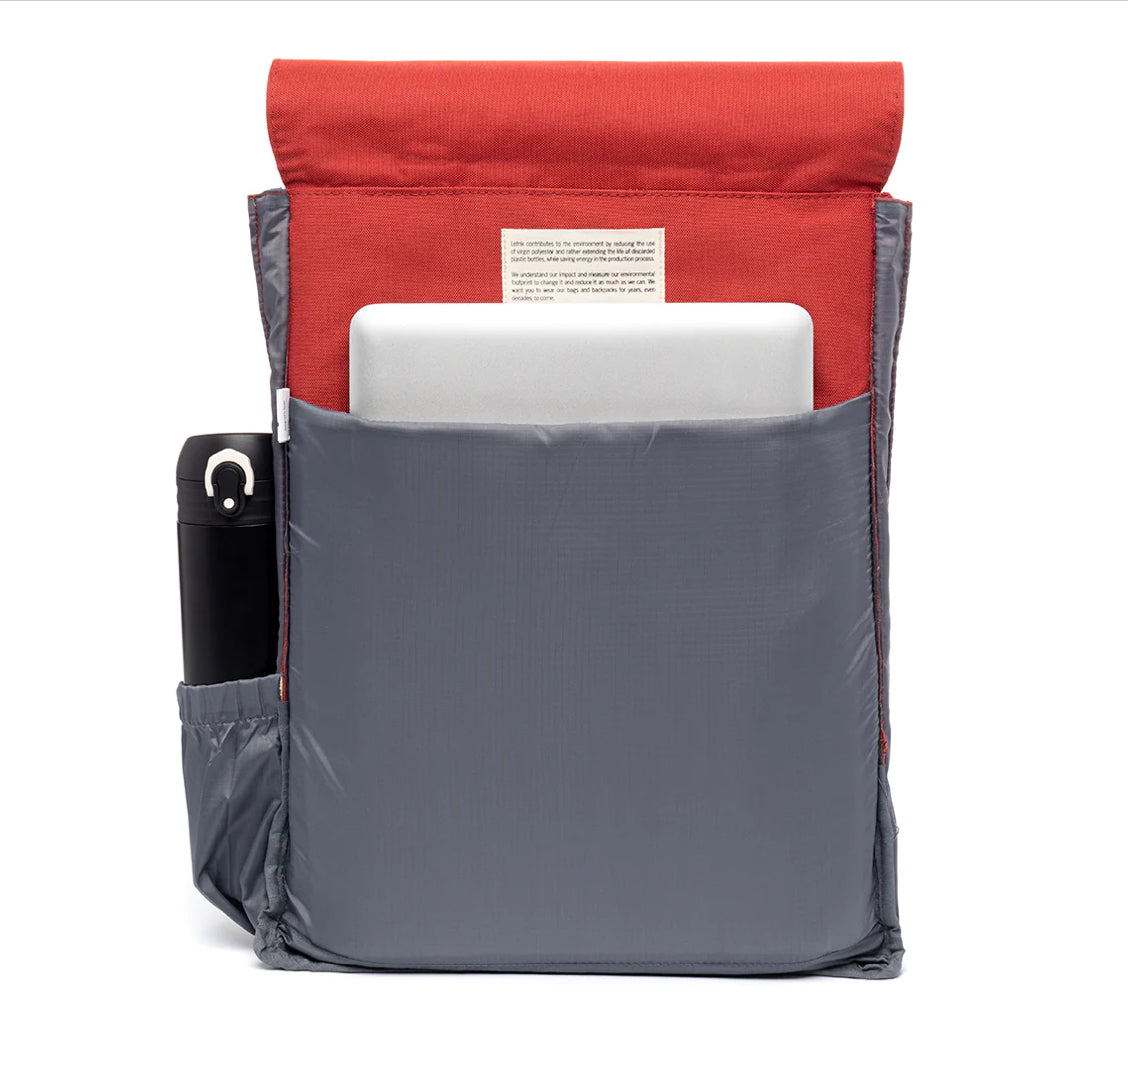 Lefrik Handy Red Backpack